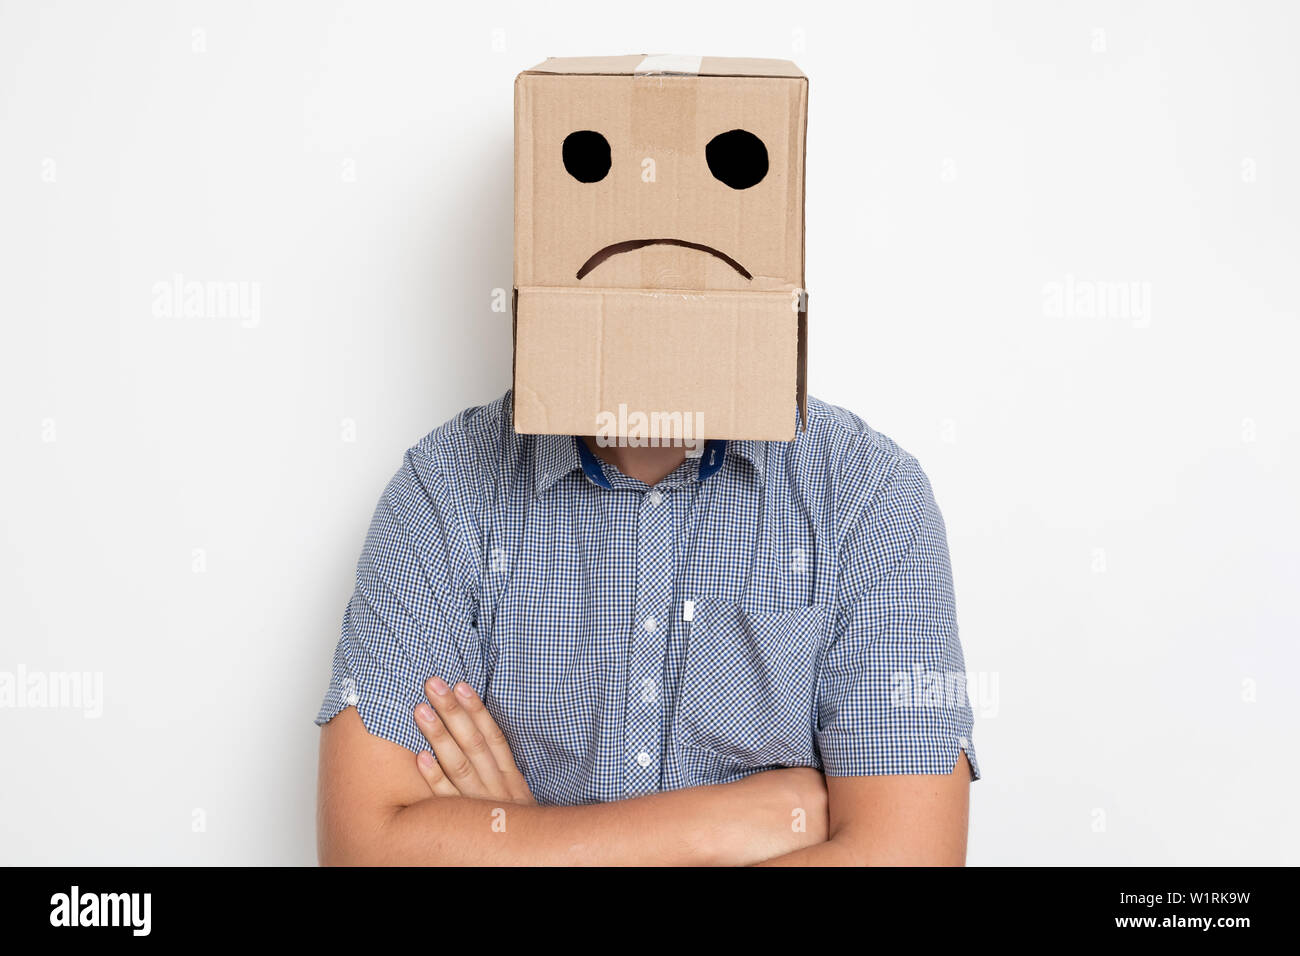 Descripción: Un hombre con una caja de cartón en la cabeza, un smiley triste Foto de stock